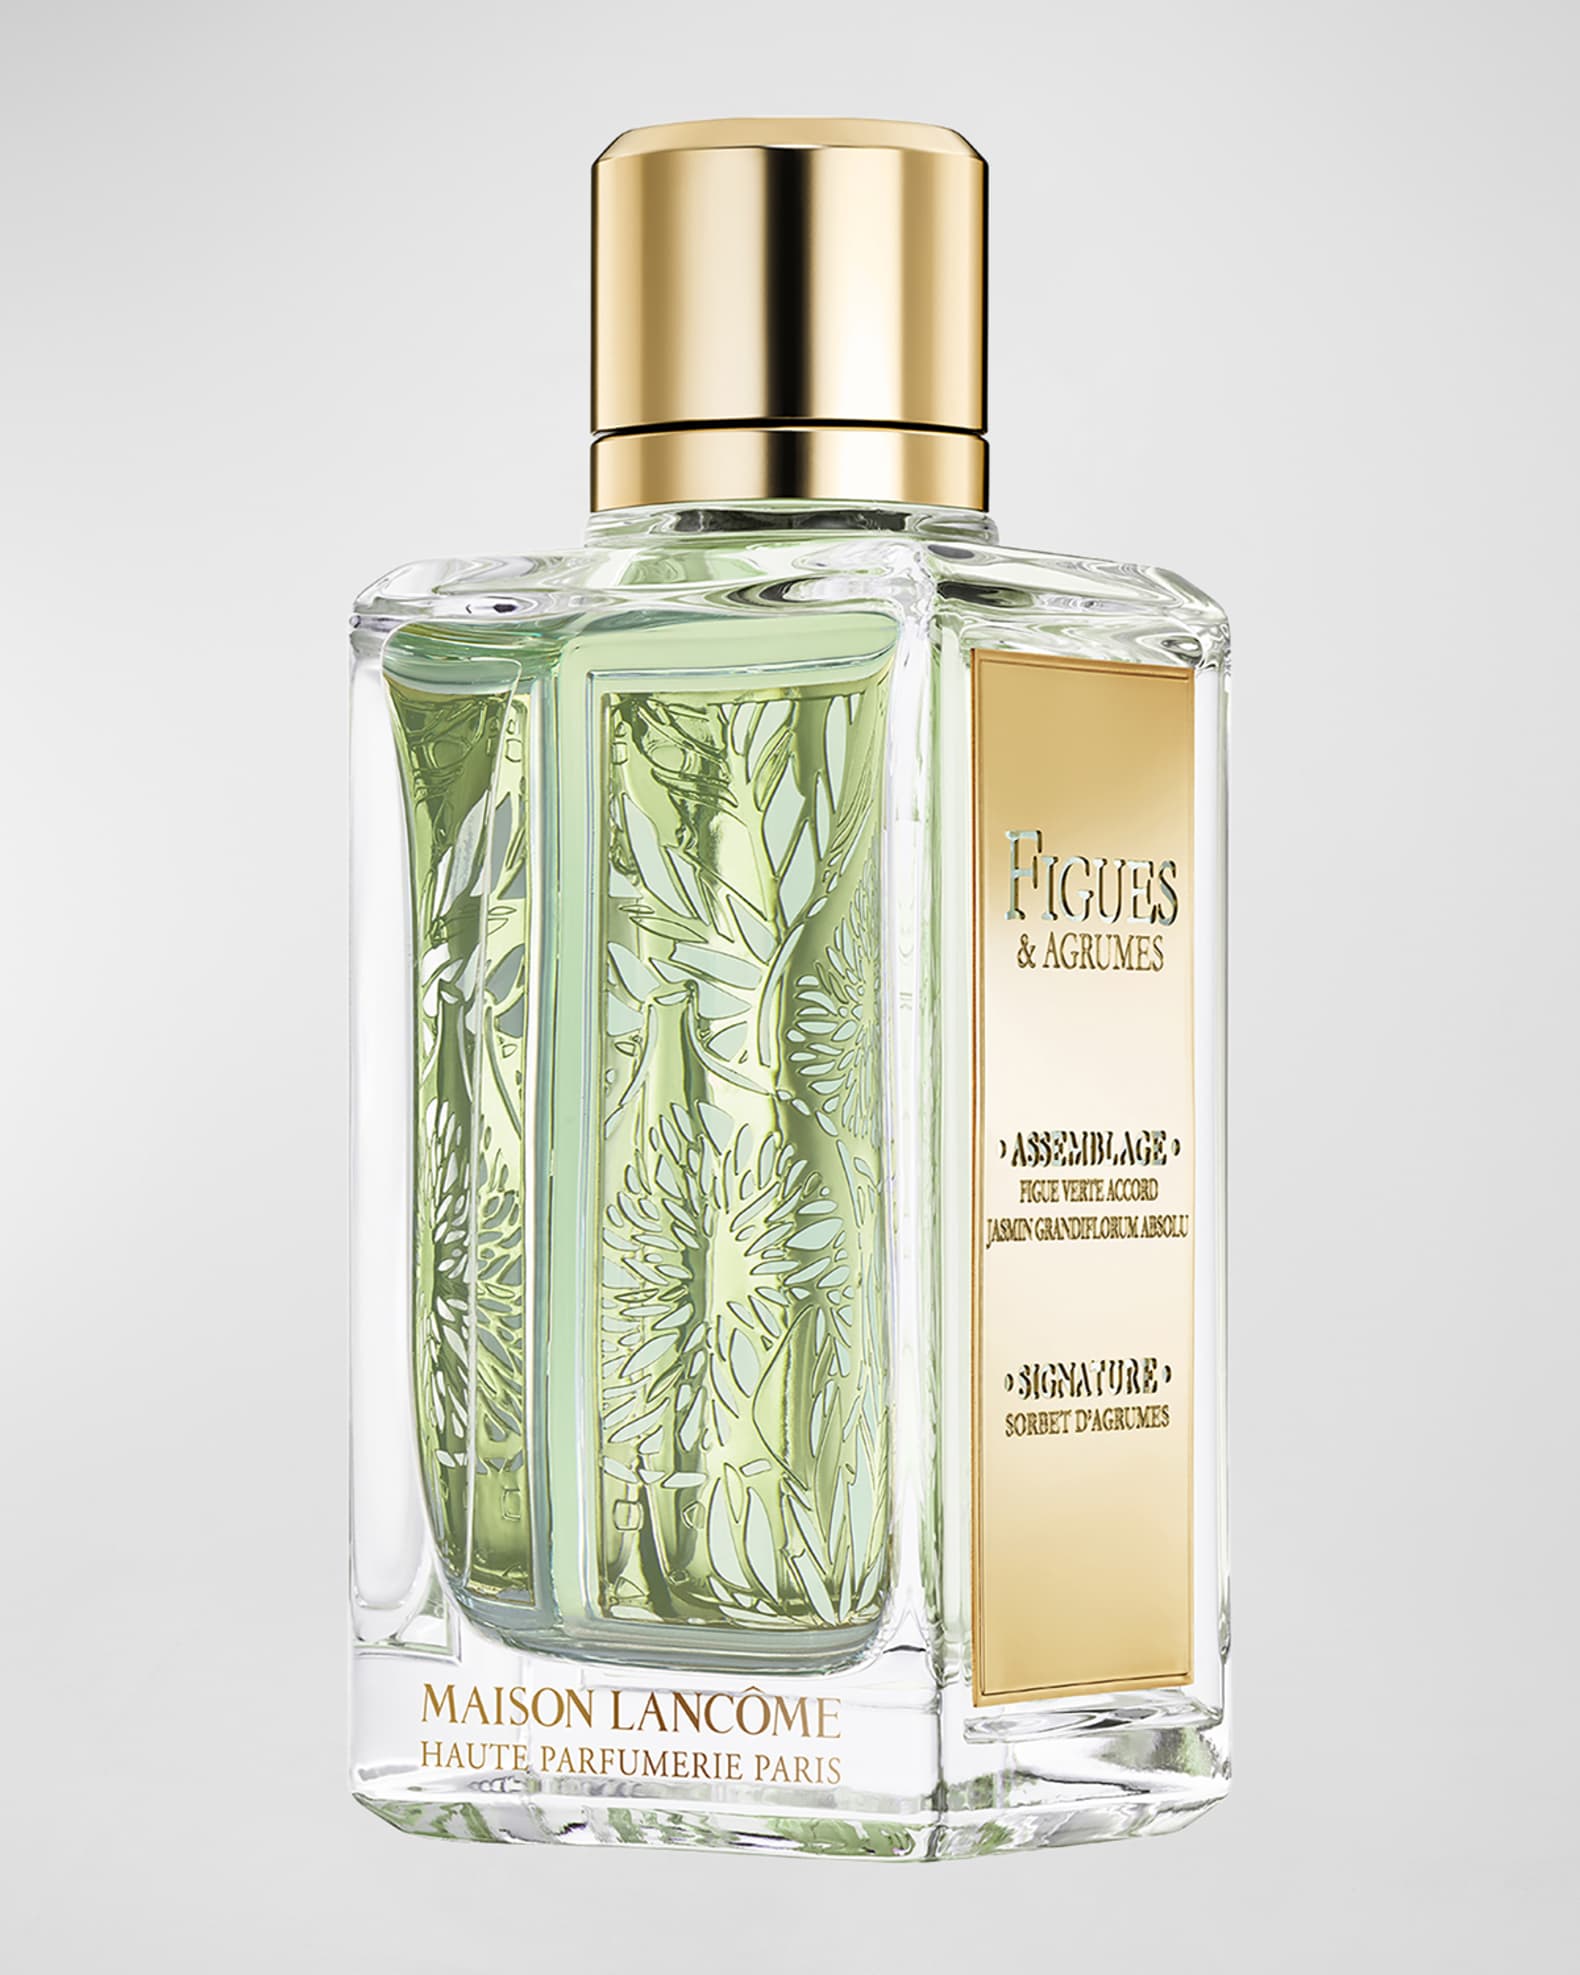 Lancôme Figues & Agrumes perfume